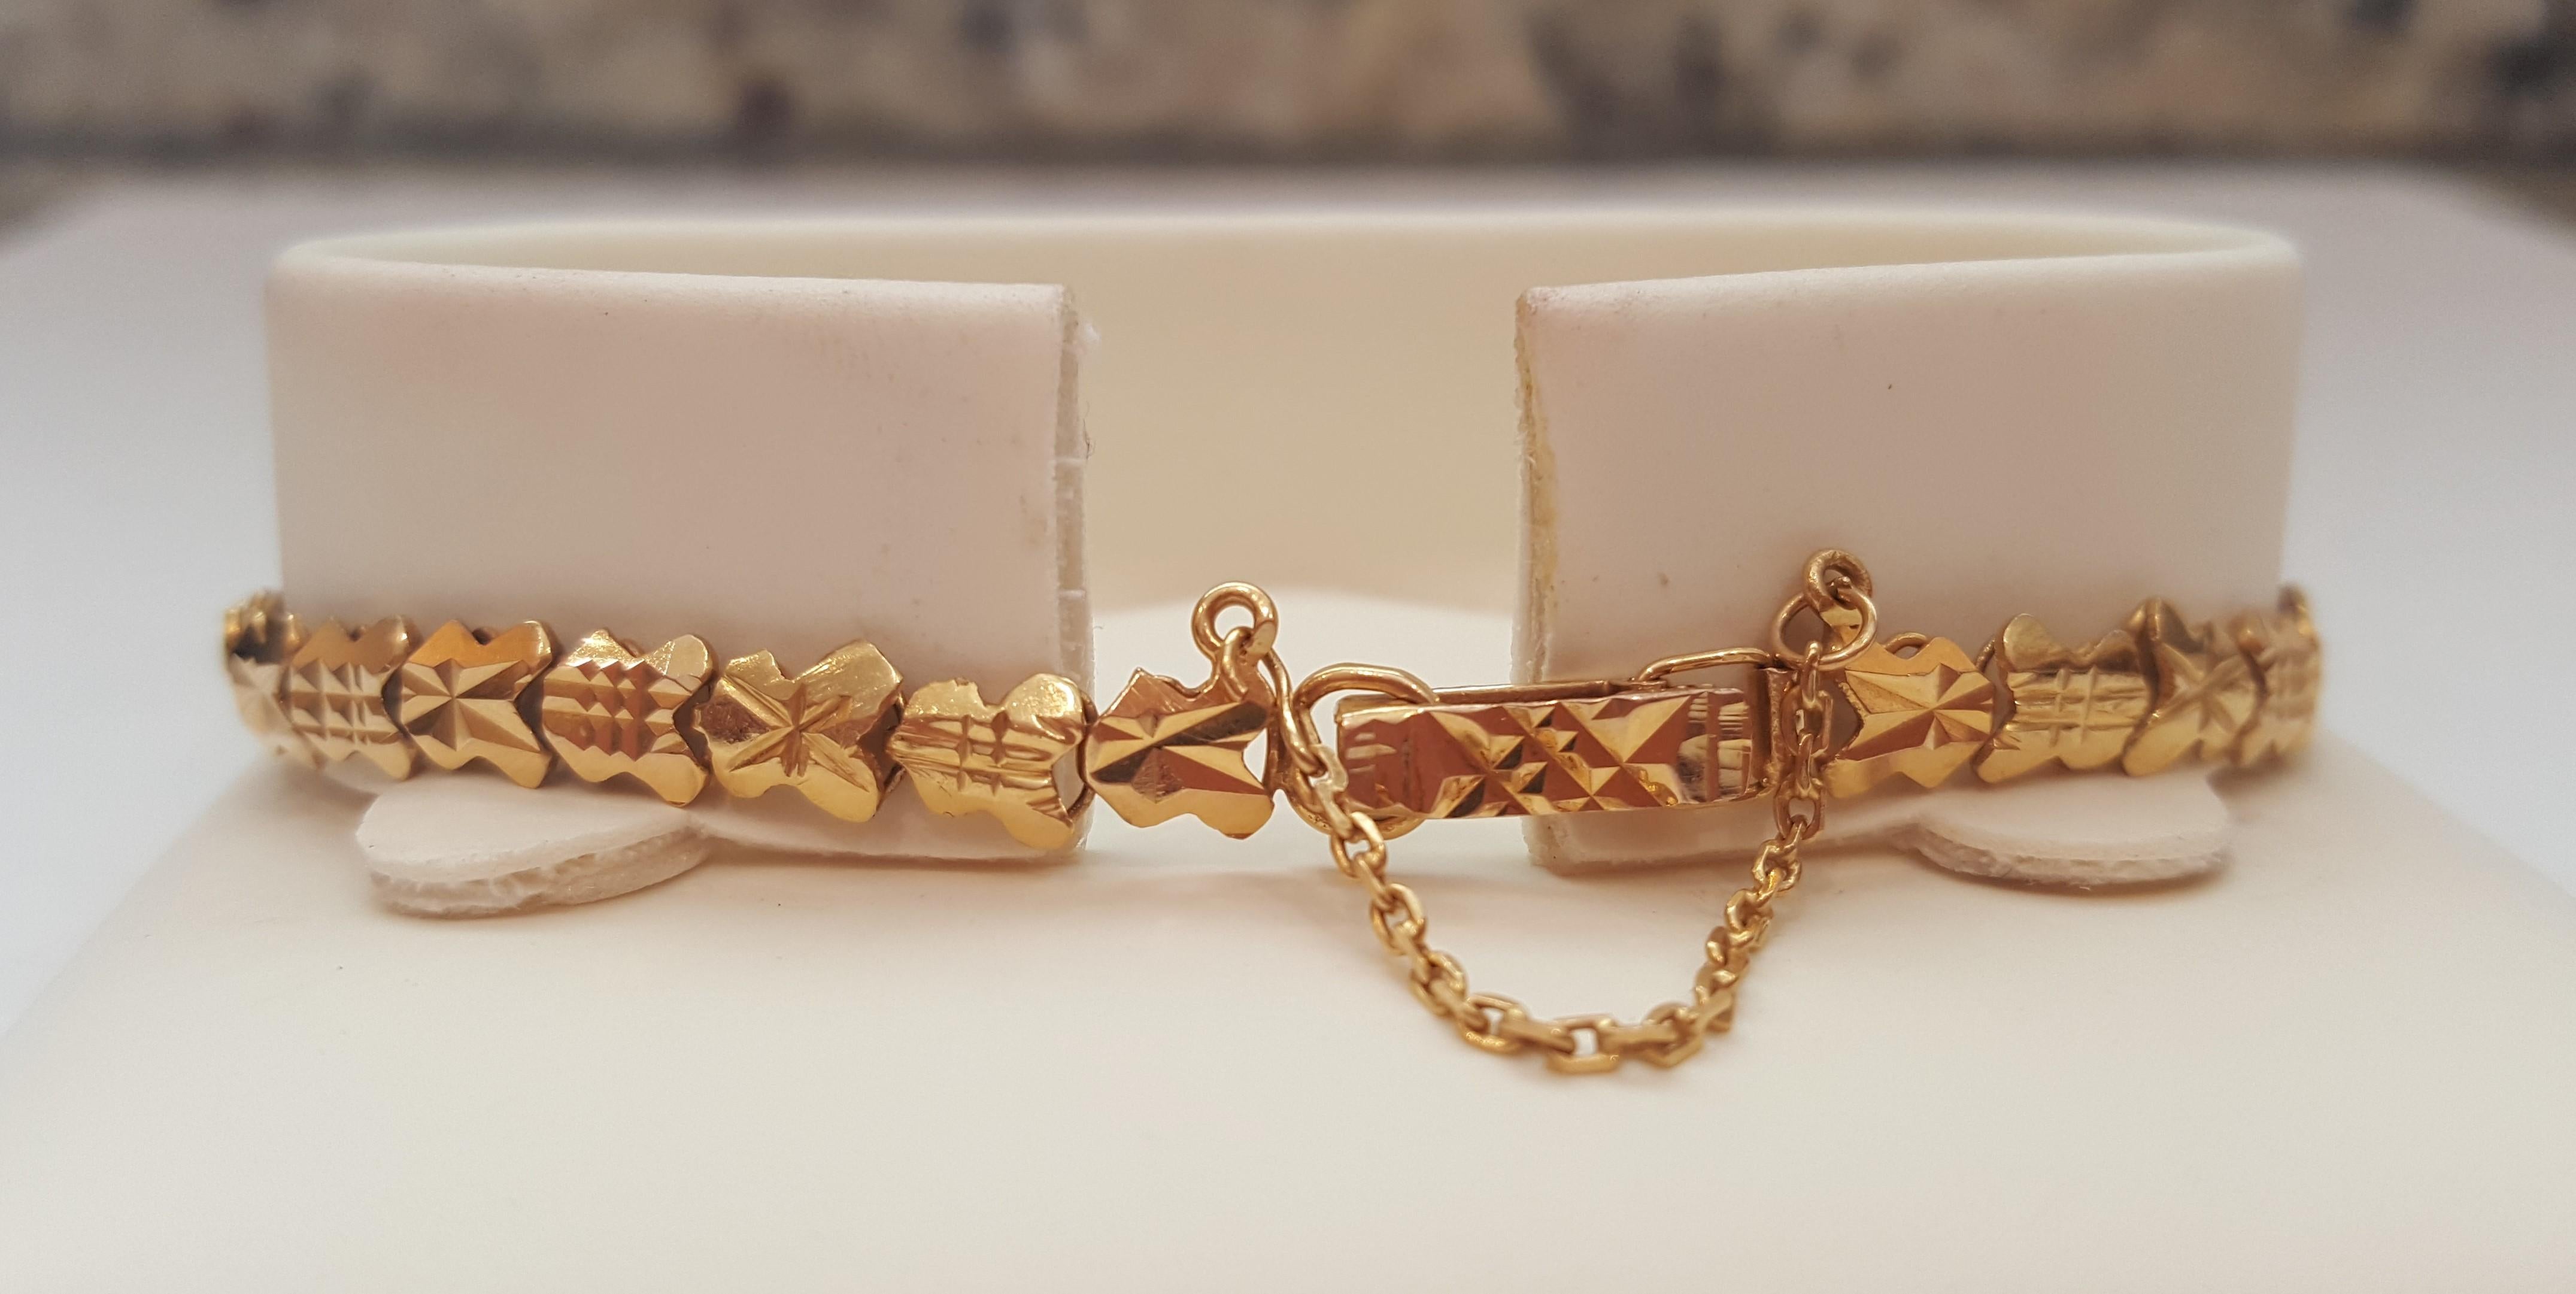 jade bracelet with gold